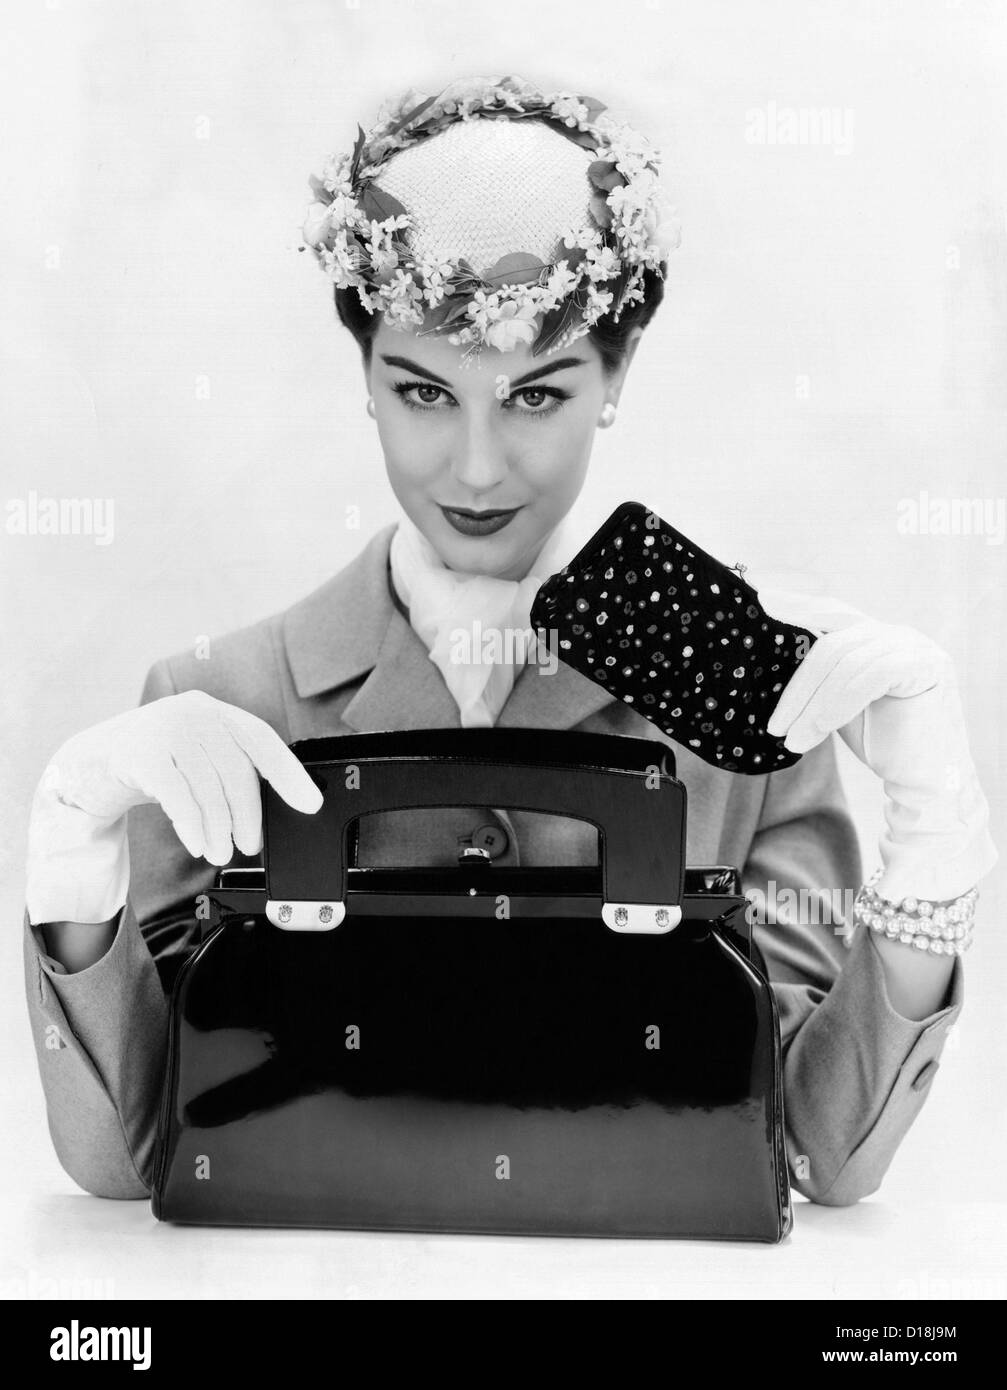 Des accessoires féminins : une taille carrée, ouverture par le haut, noir sac à main en cuir. Un petit chapeau porté vers l'avant avec bordure de fleurs Banque D'Images